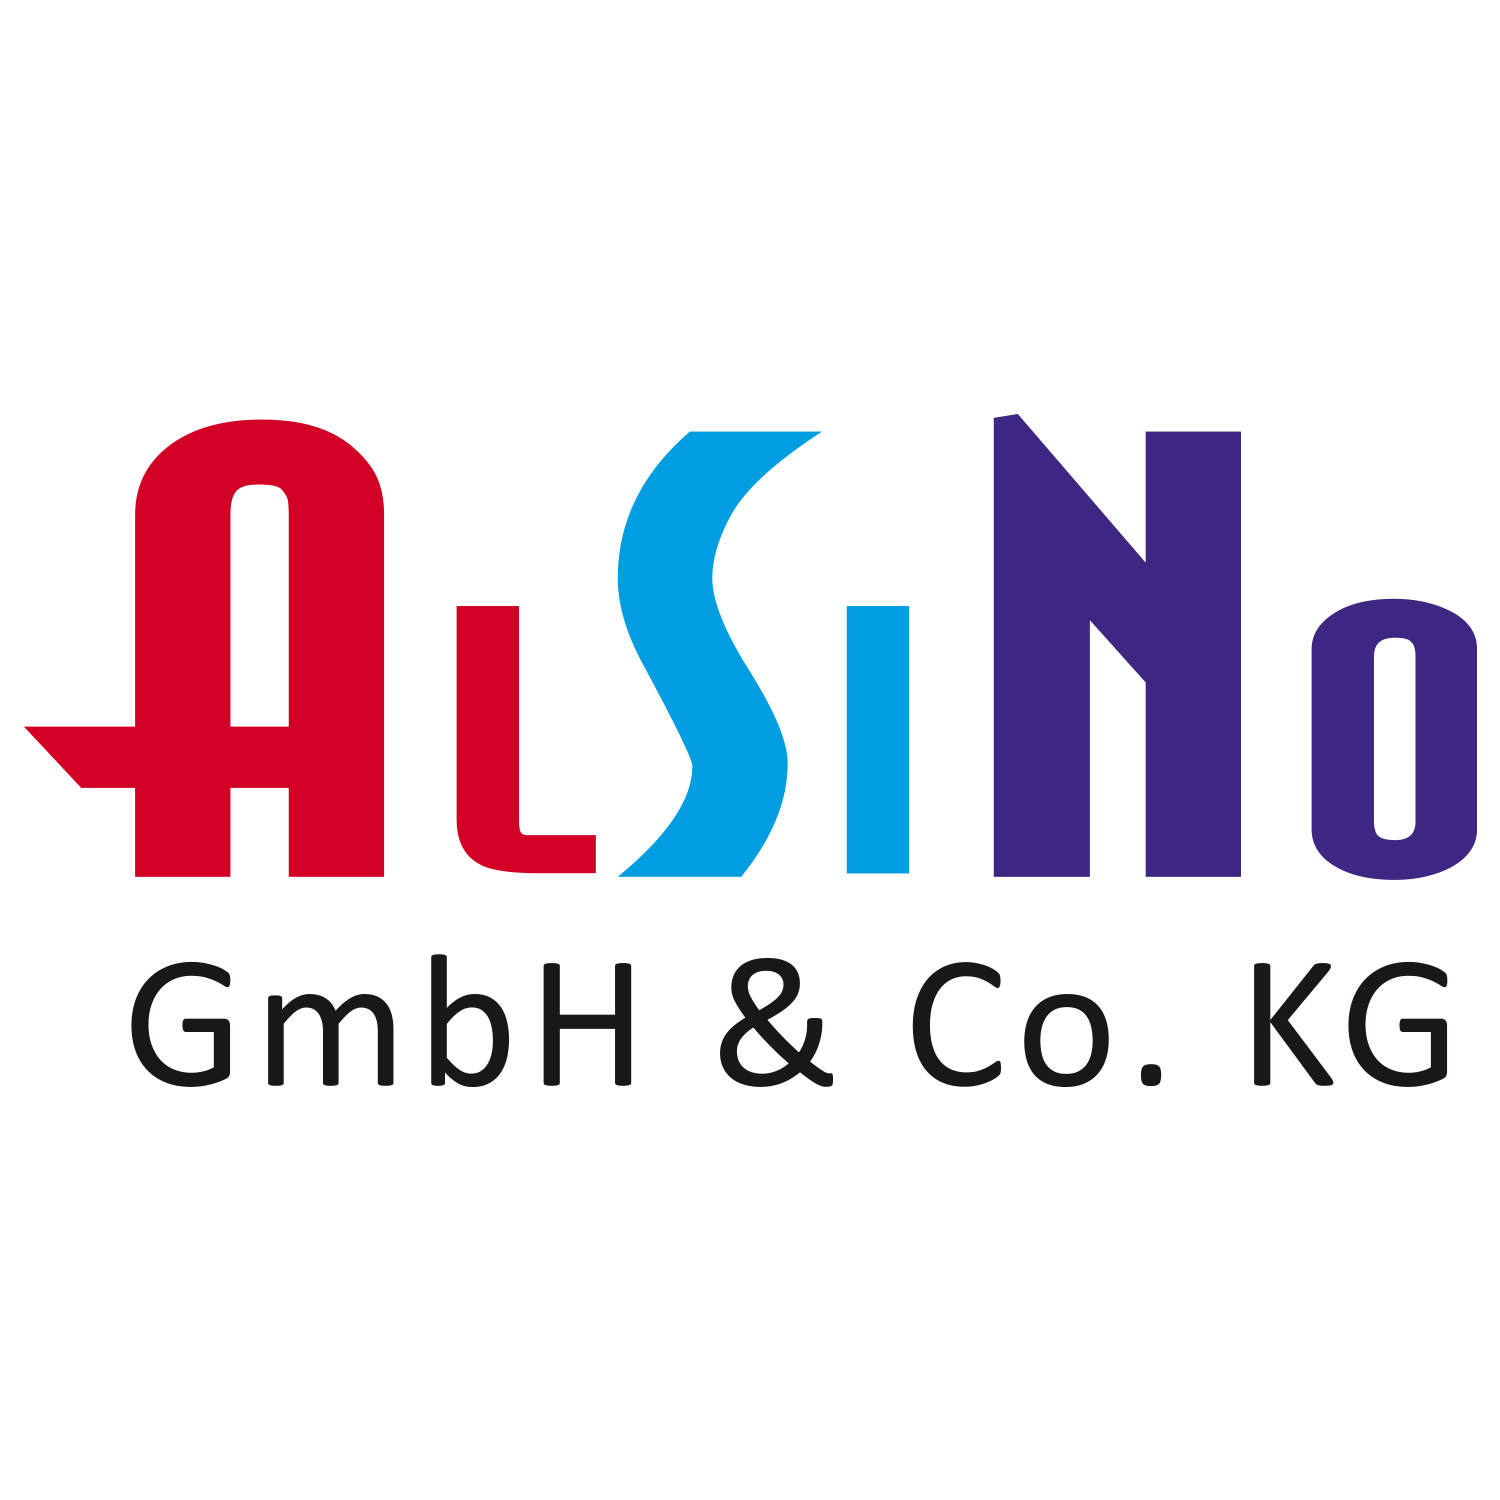 Alsino GmbH & Co.KG